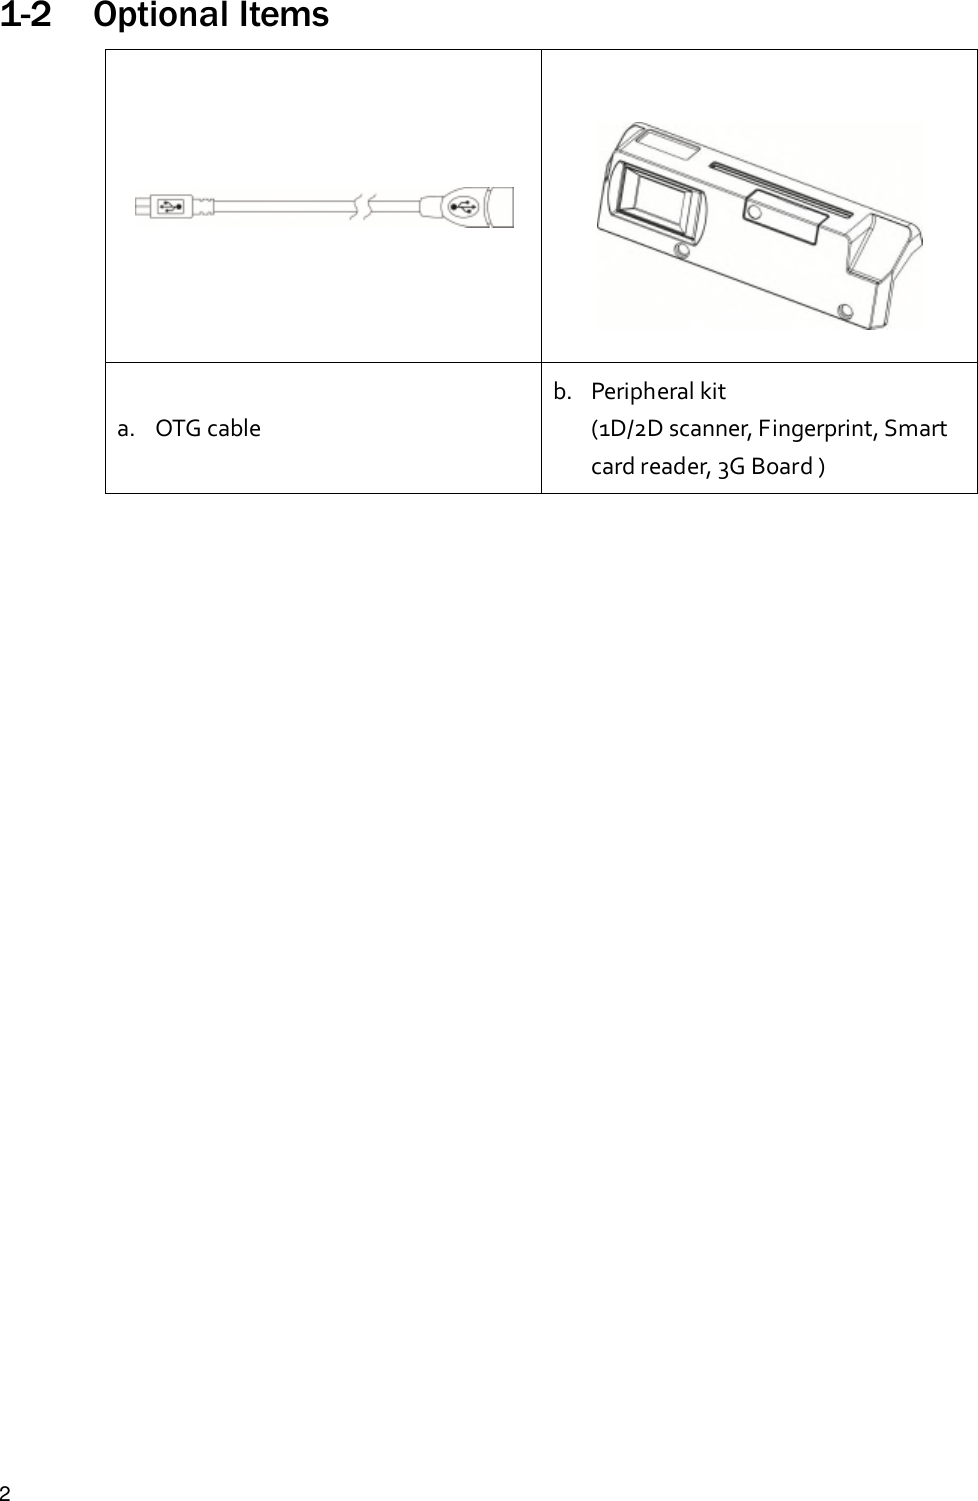 21-2 Optional Itemsa. OTG cableb. Peripheral kit(1D/2D scanner, Fingerprint, Smartcard reader, 3G Board )